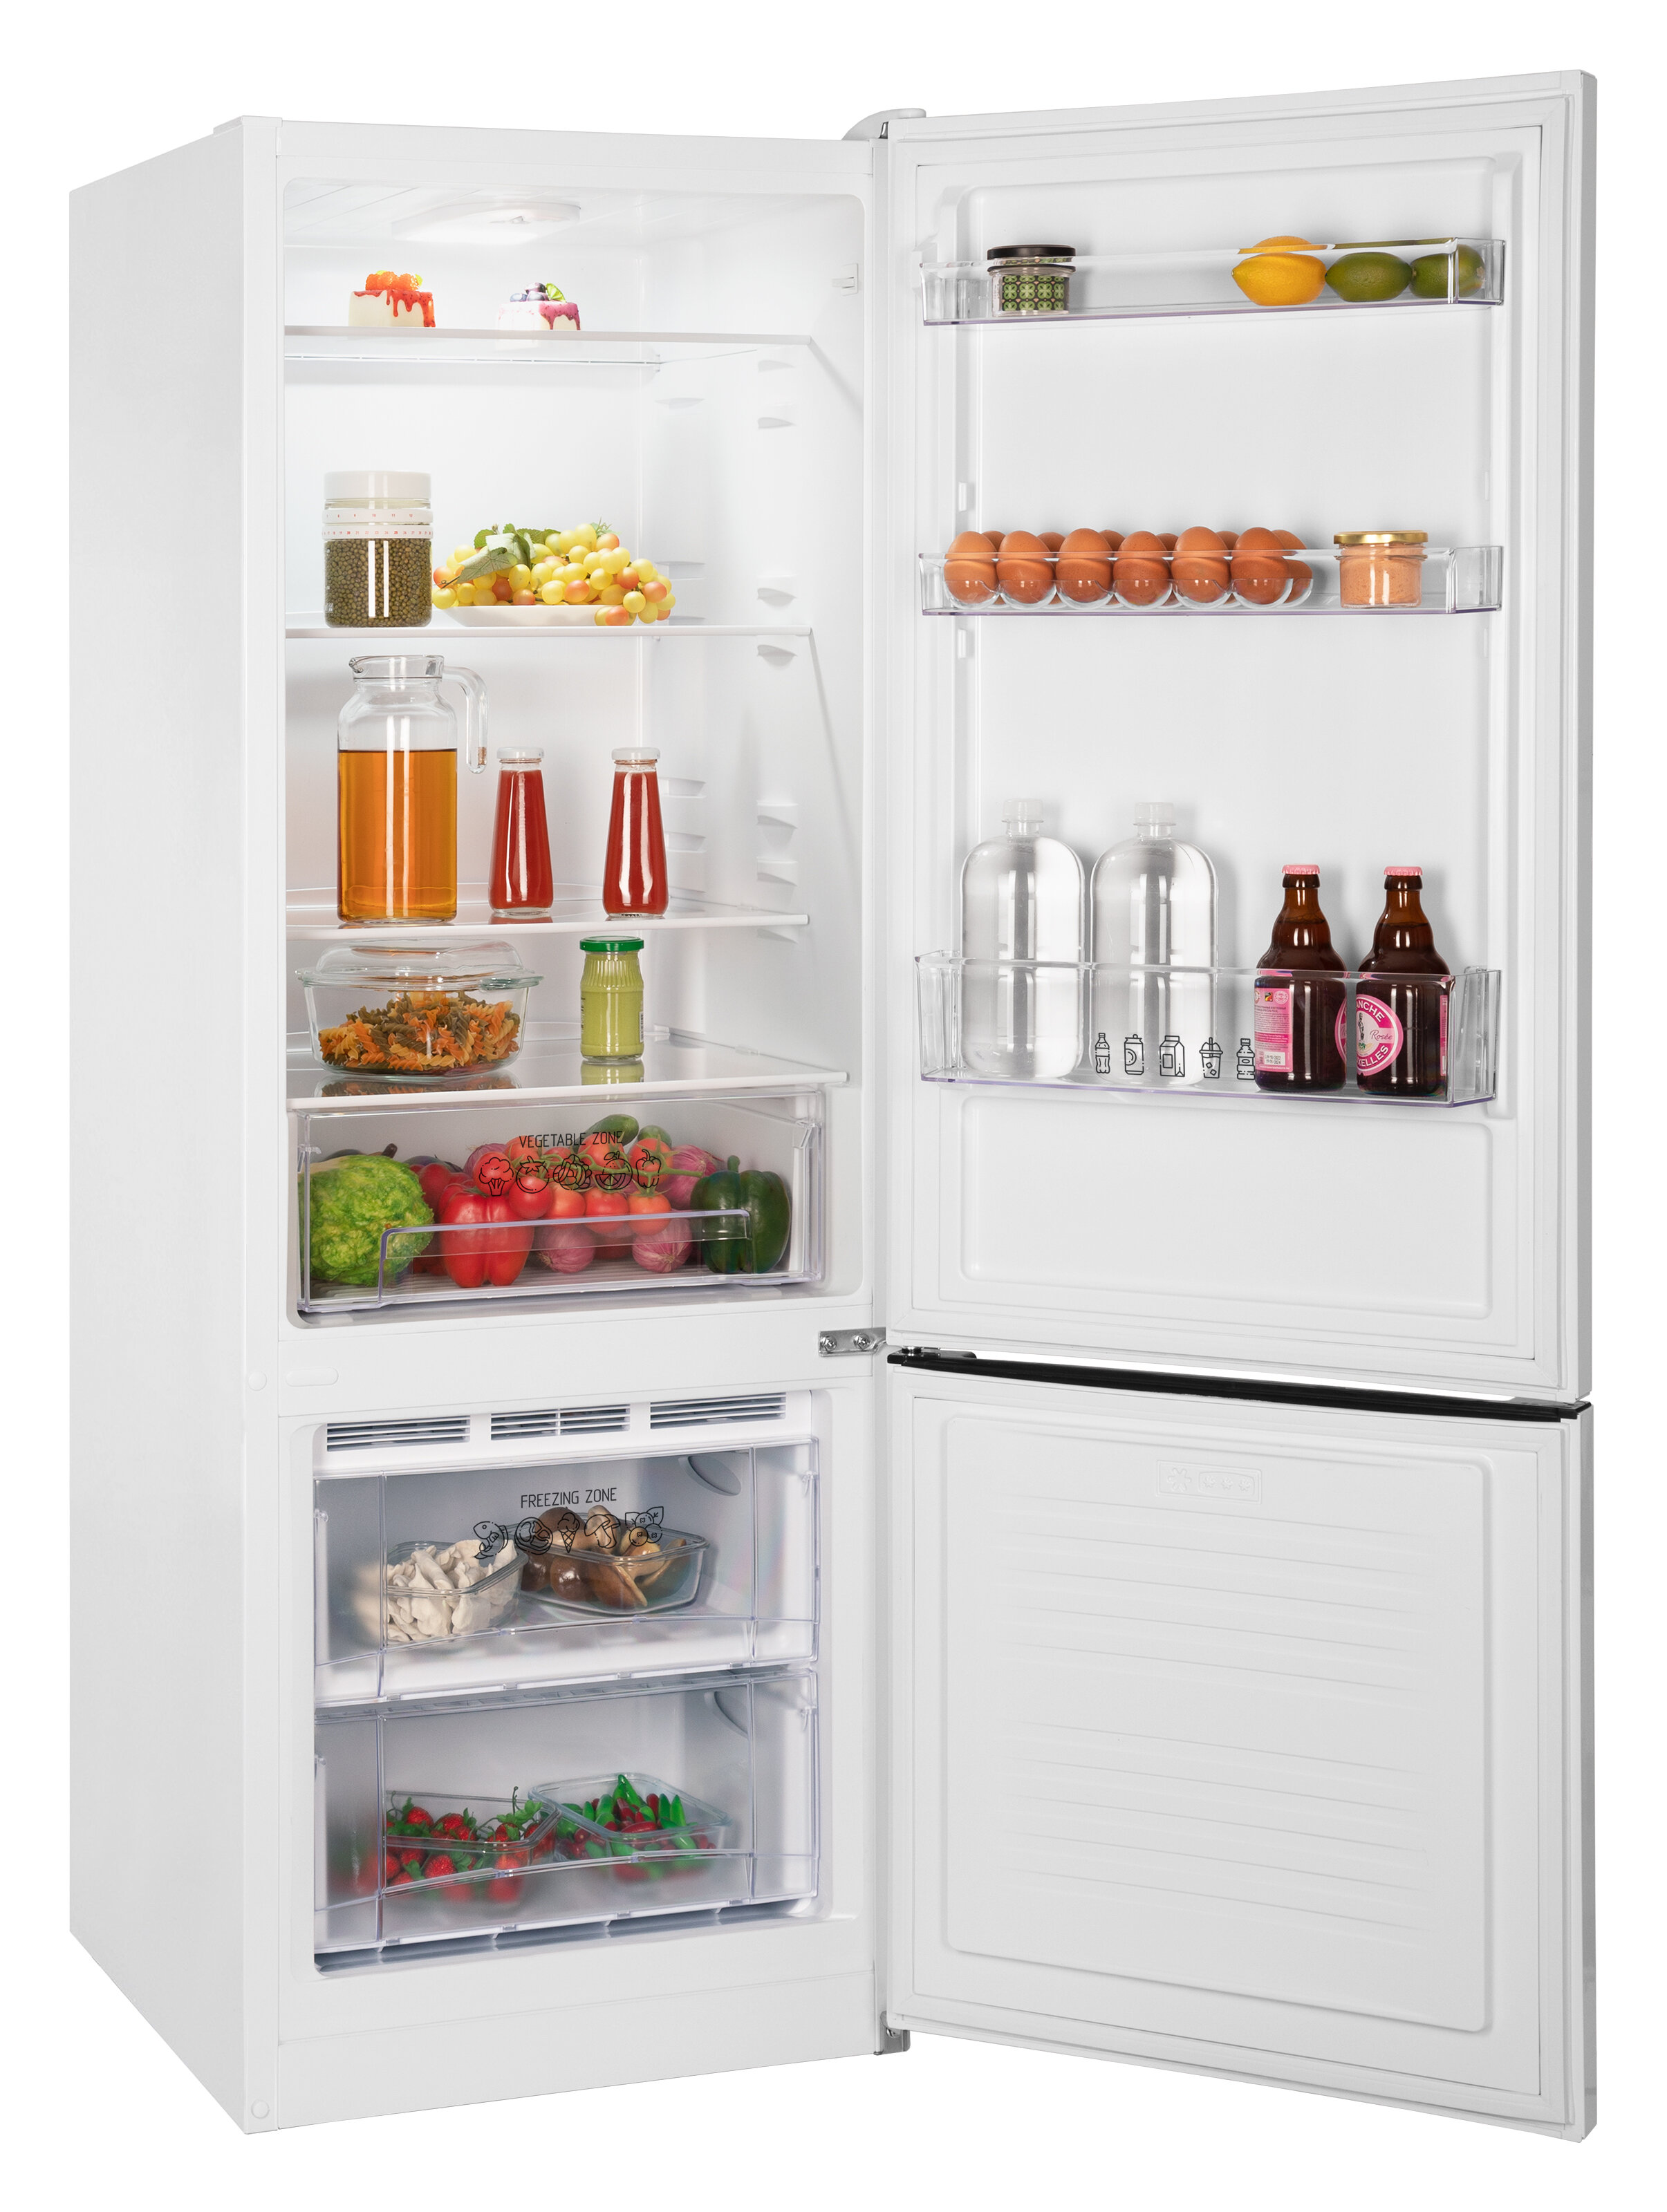 Холодильник NORDFROST NRB 122 E двухкамерный 275 л 166 см высота бежевый